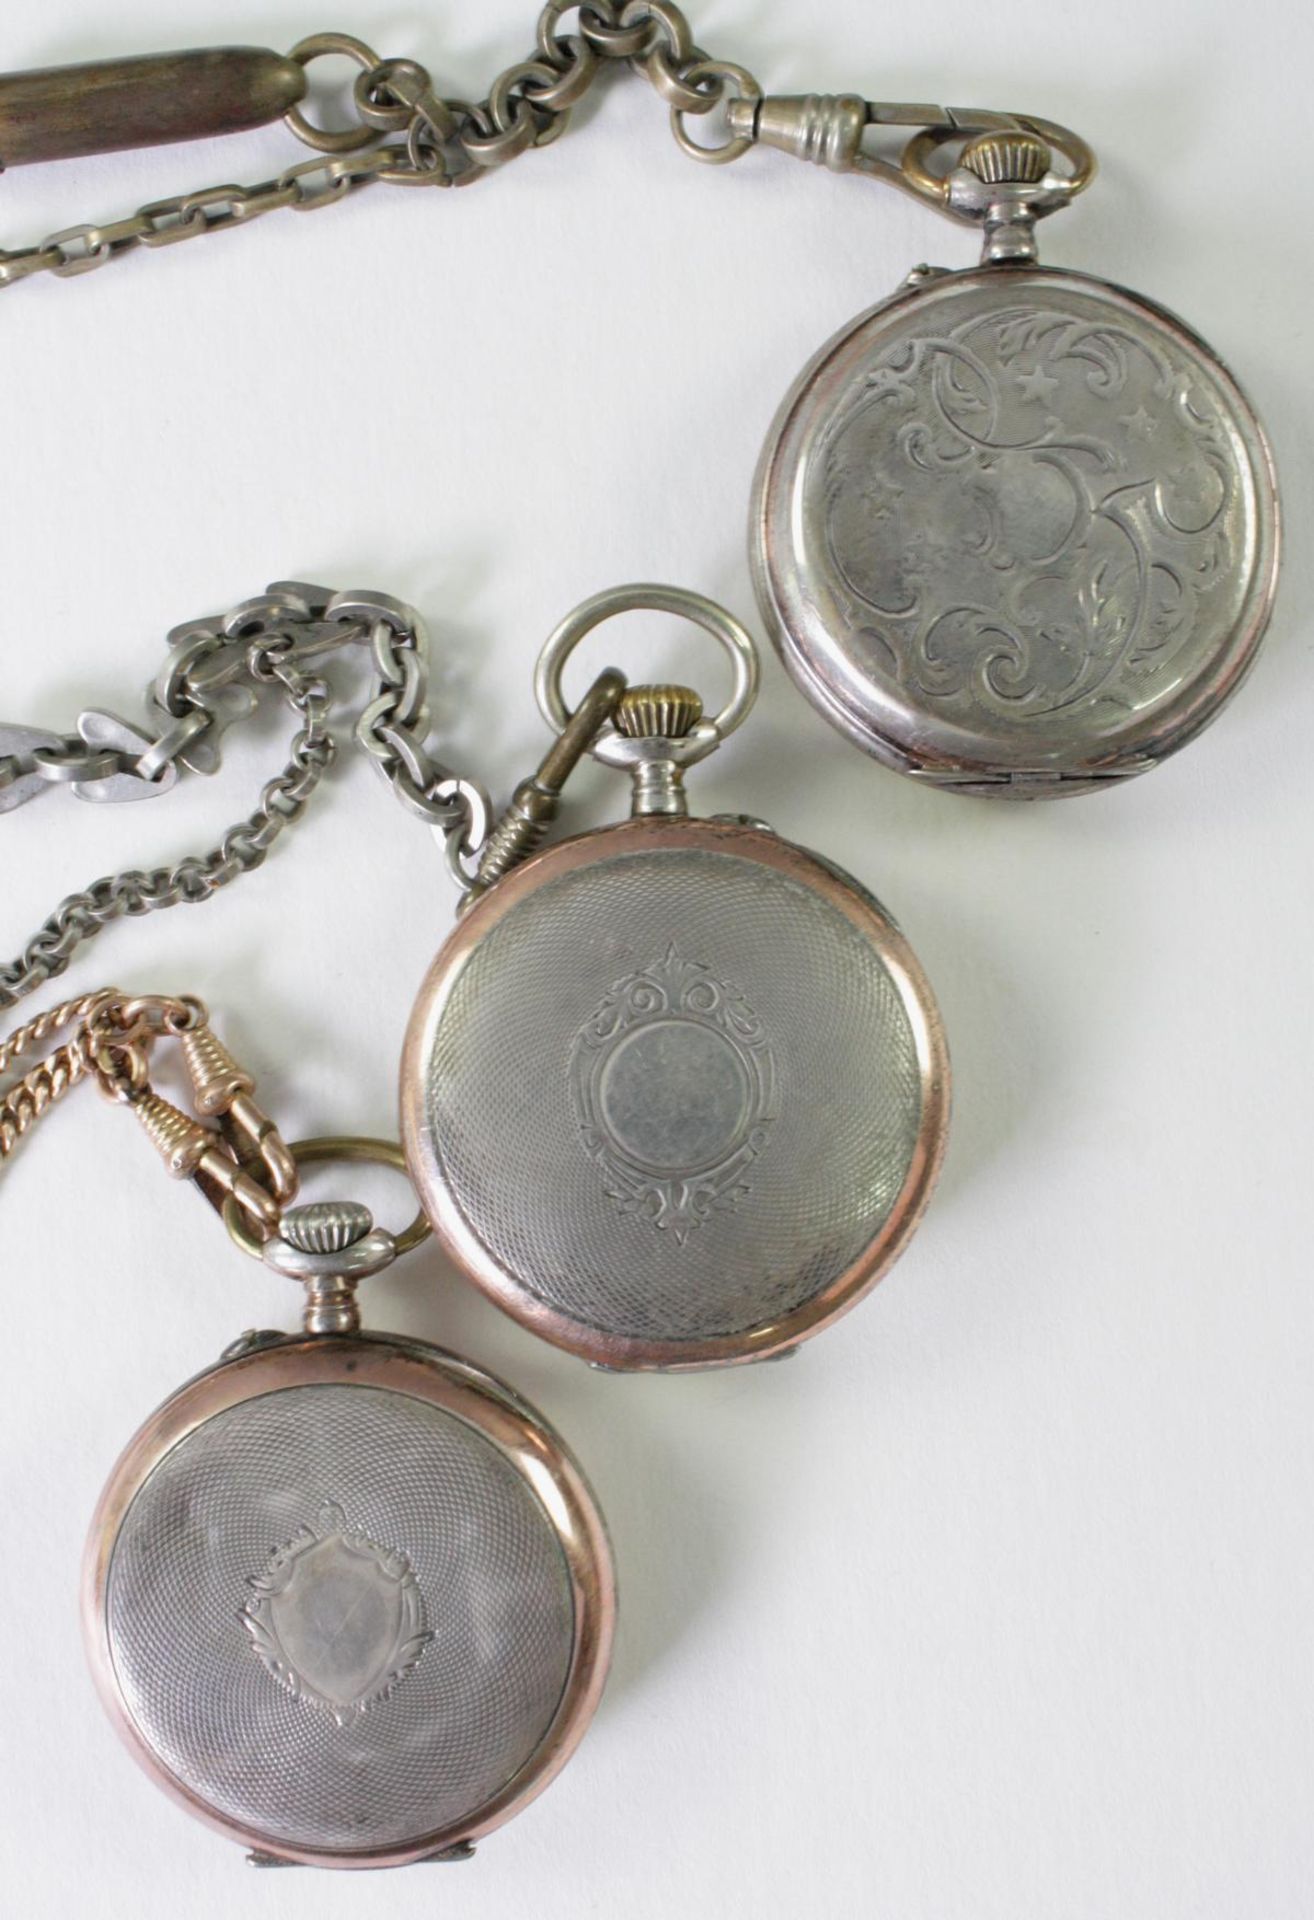 Drei antike Taschenuhren um 1900 aus Silber - Bild 4 aus 6